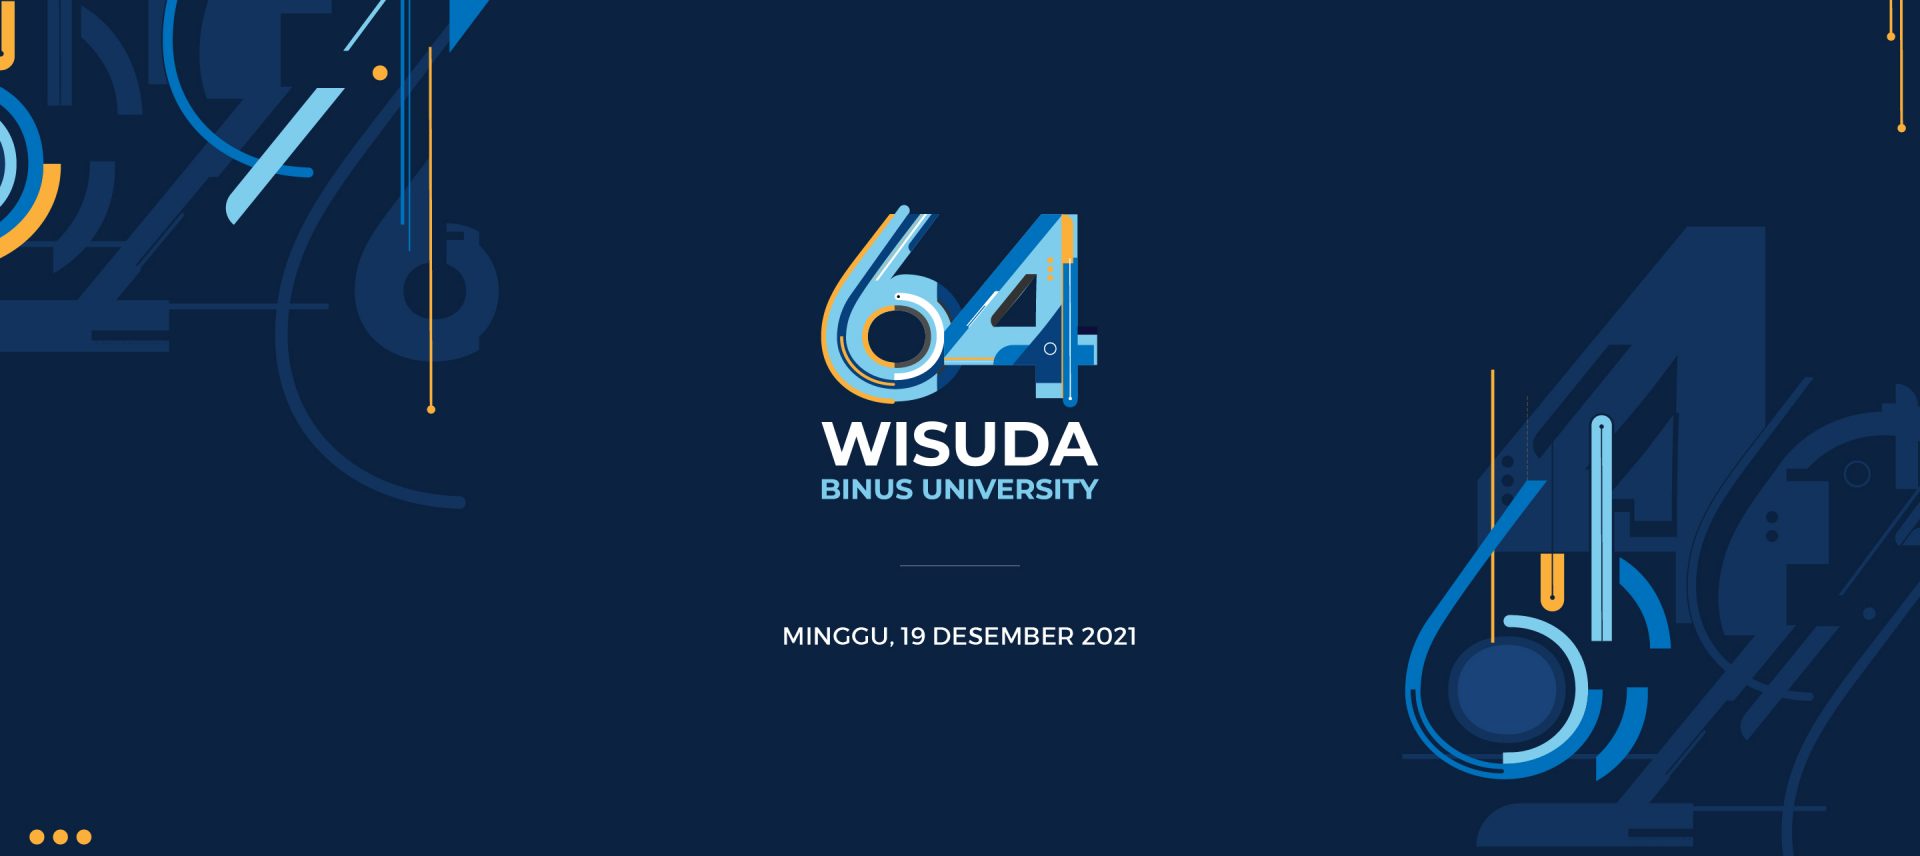 Wisuda 64 Binus University